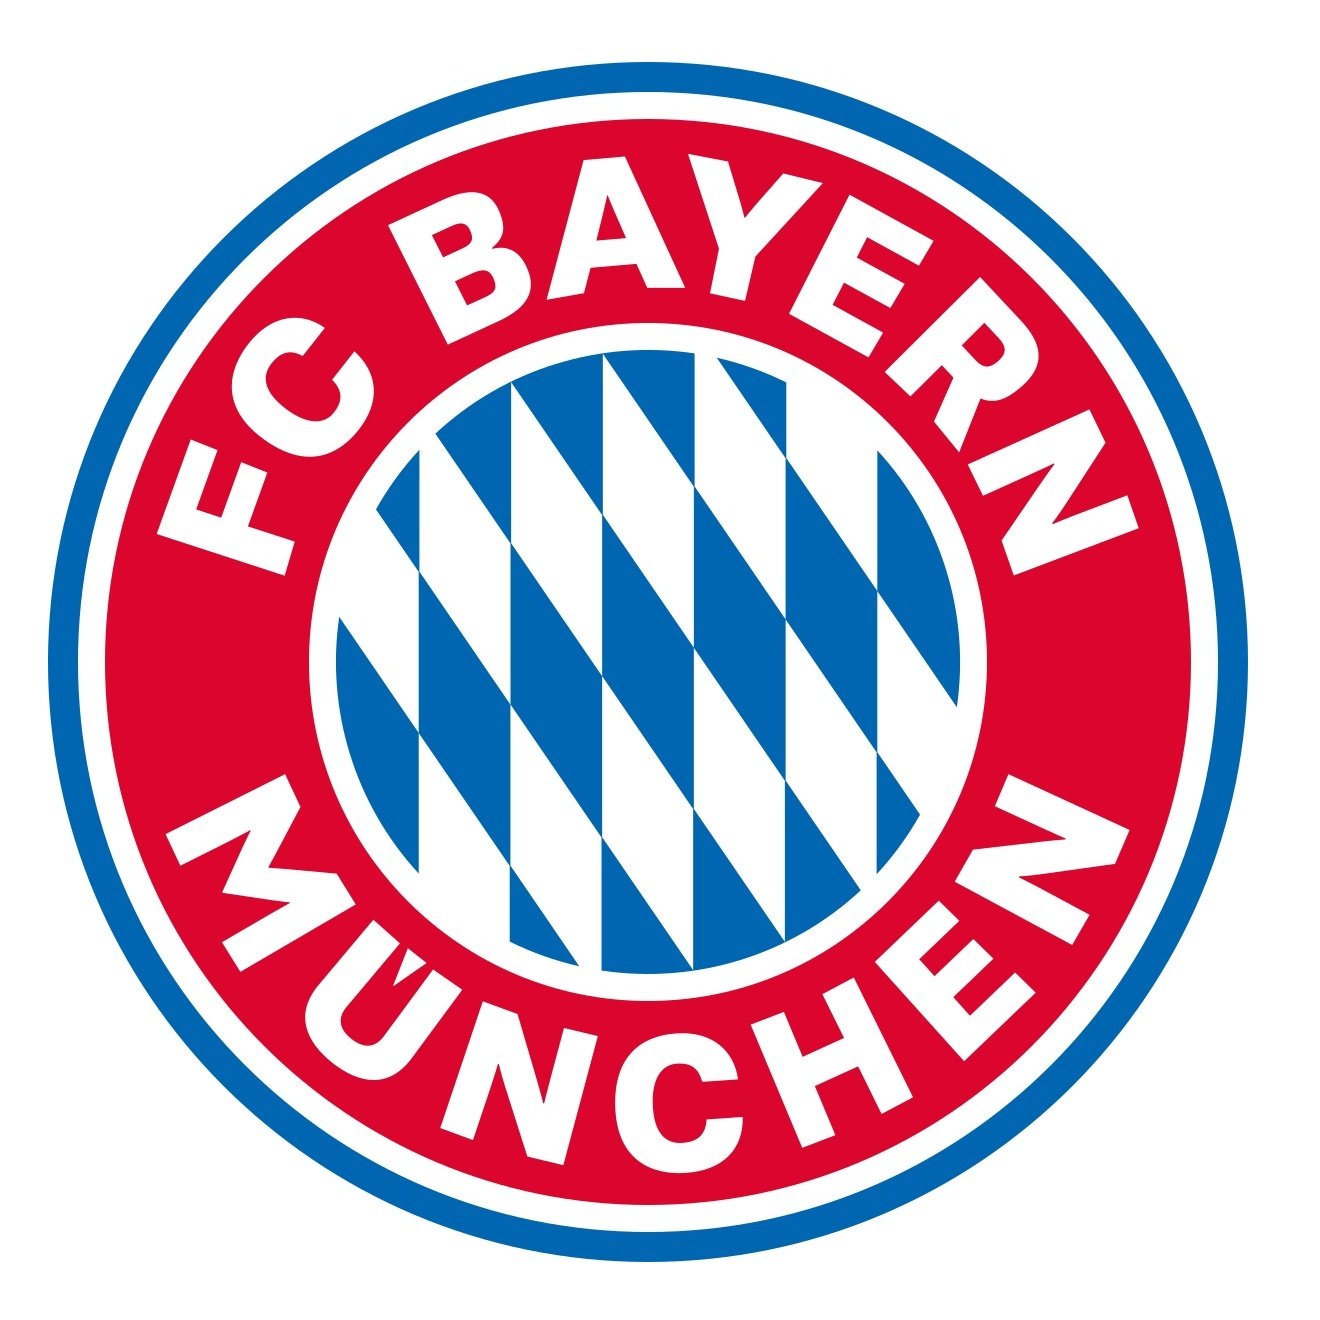 Bayern München Sub 17